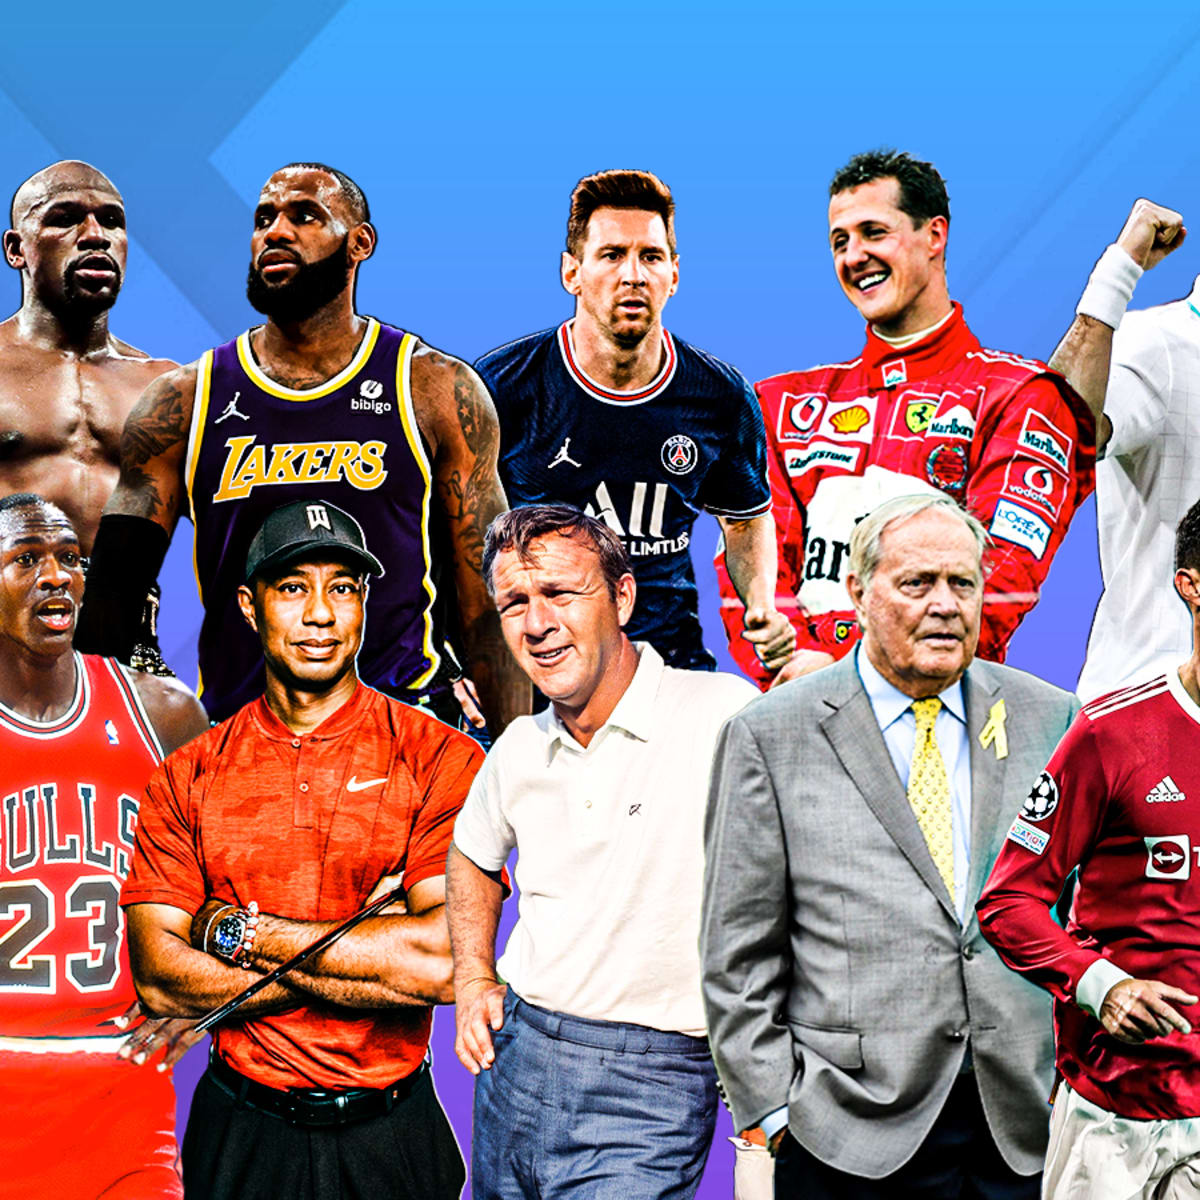 Are NBA Jersey Sponsorships Worth It? - by Joe Pompliano